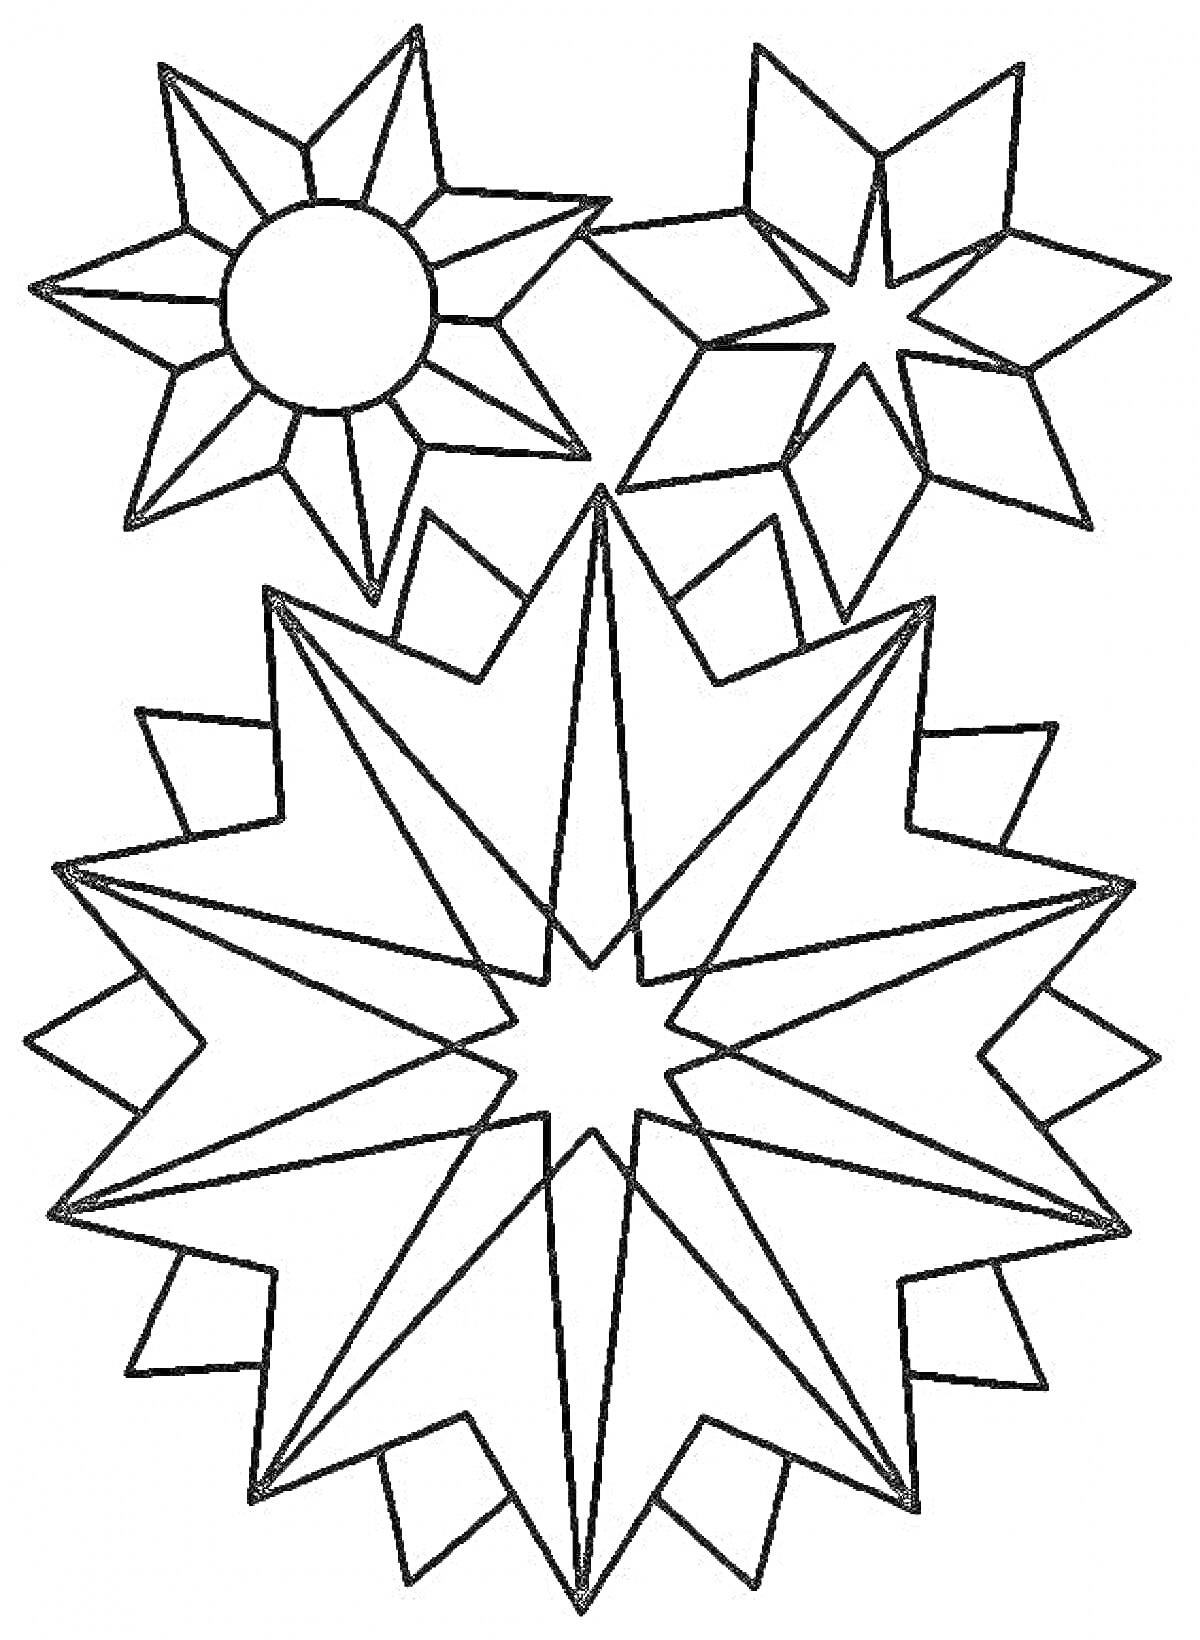 Вифлеемская звезда с геометрическими фигурами, включая круг и угловатые элементы.